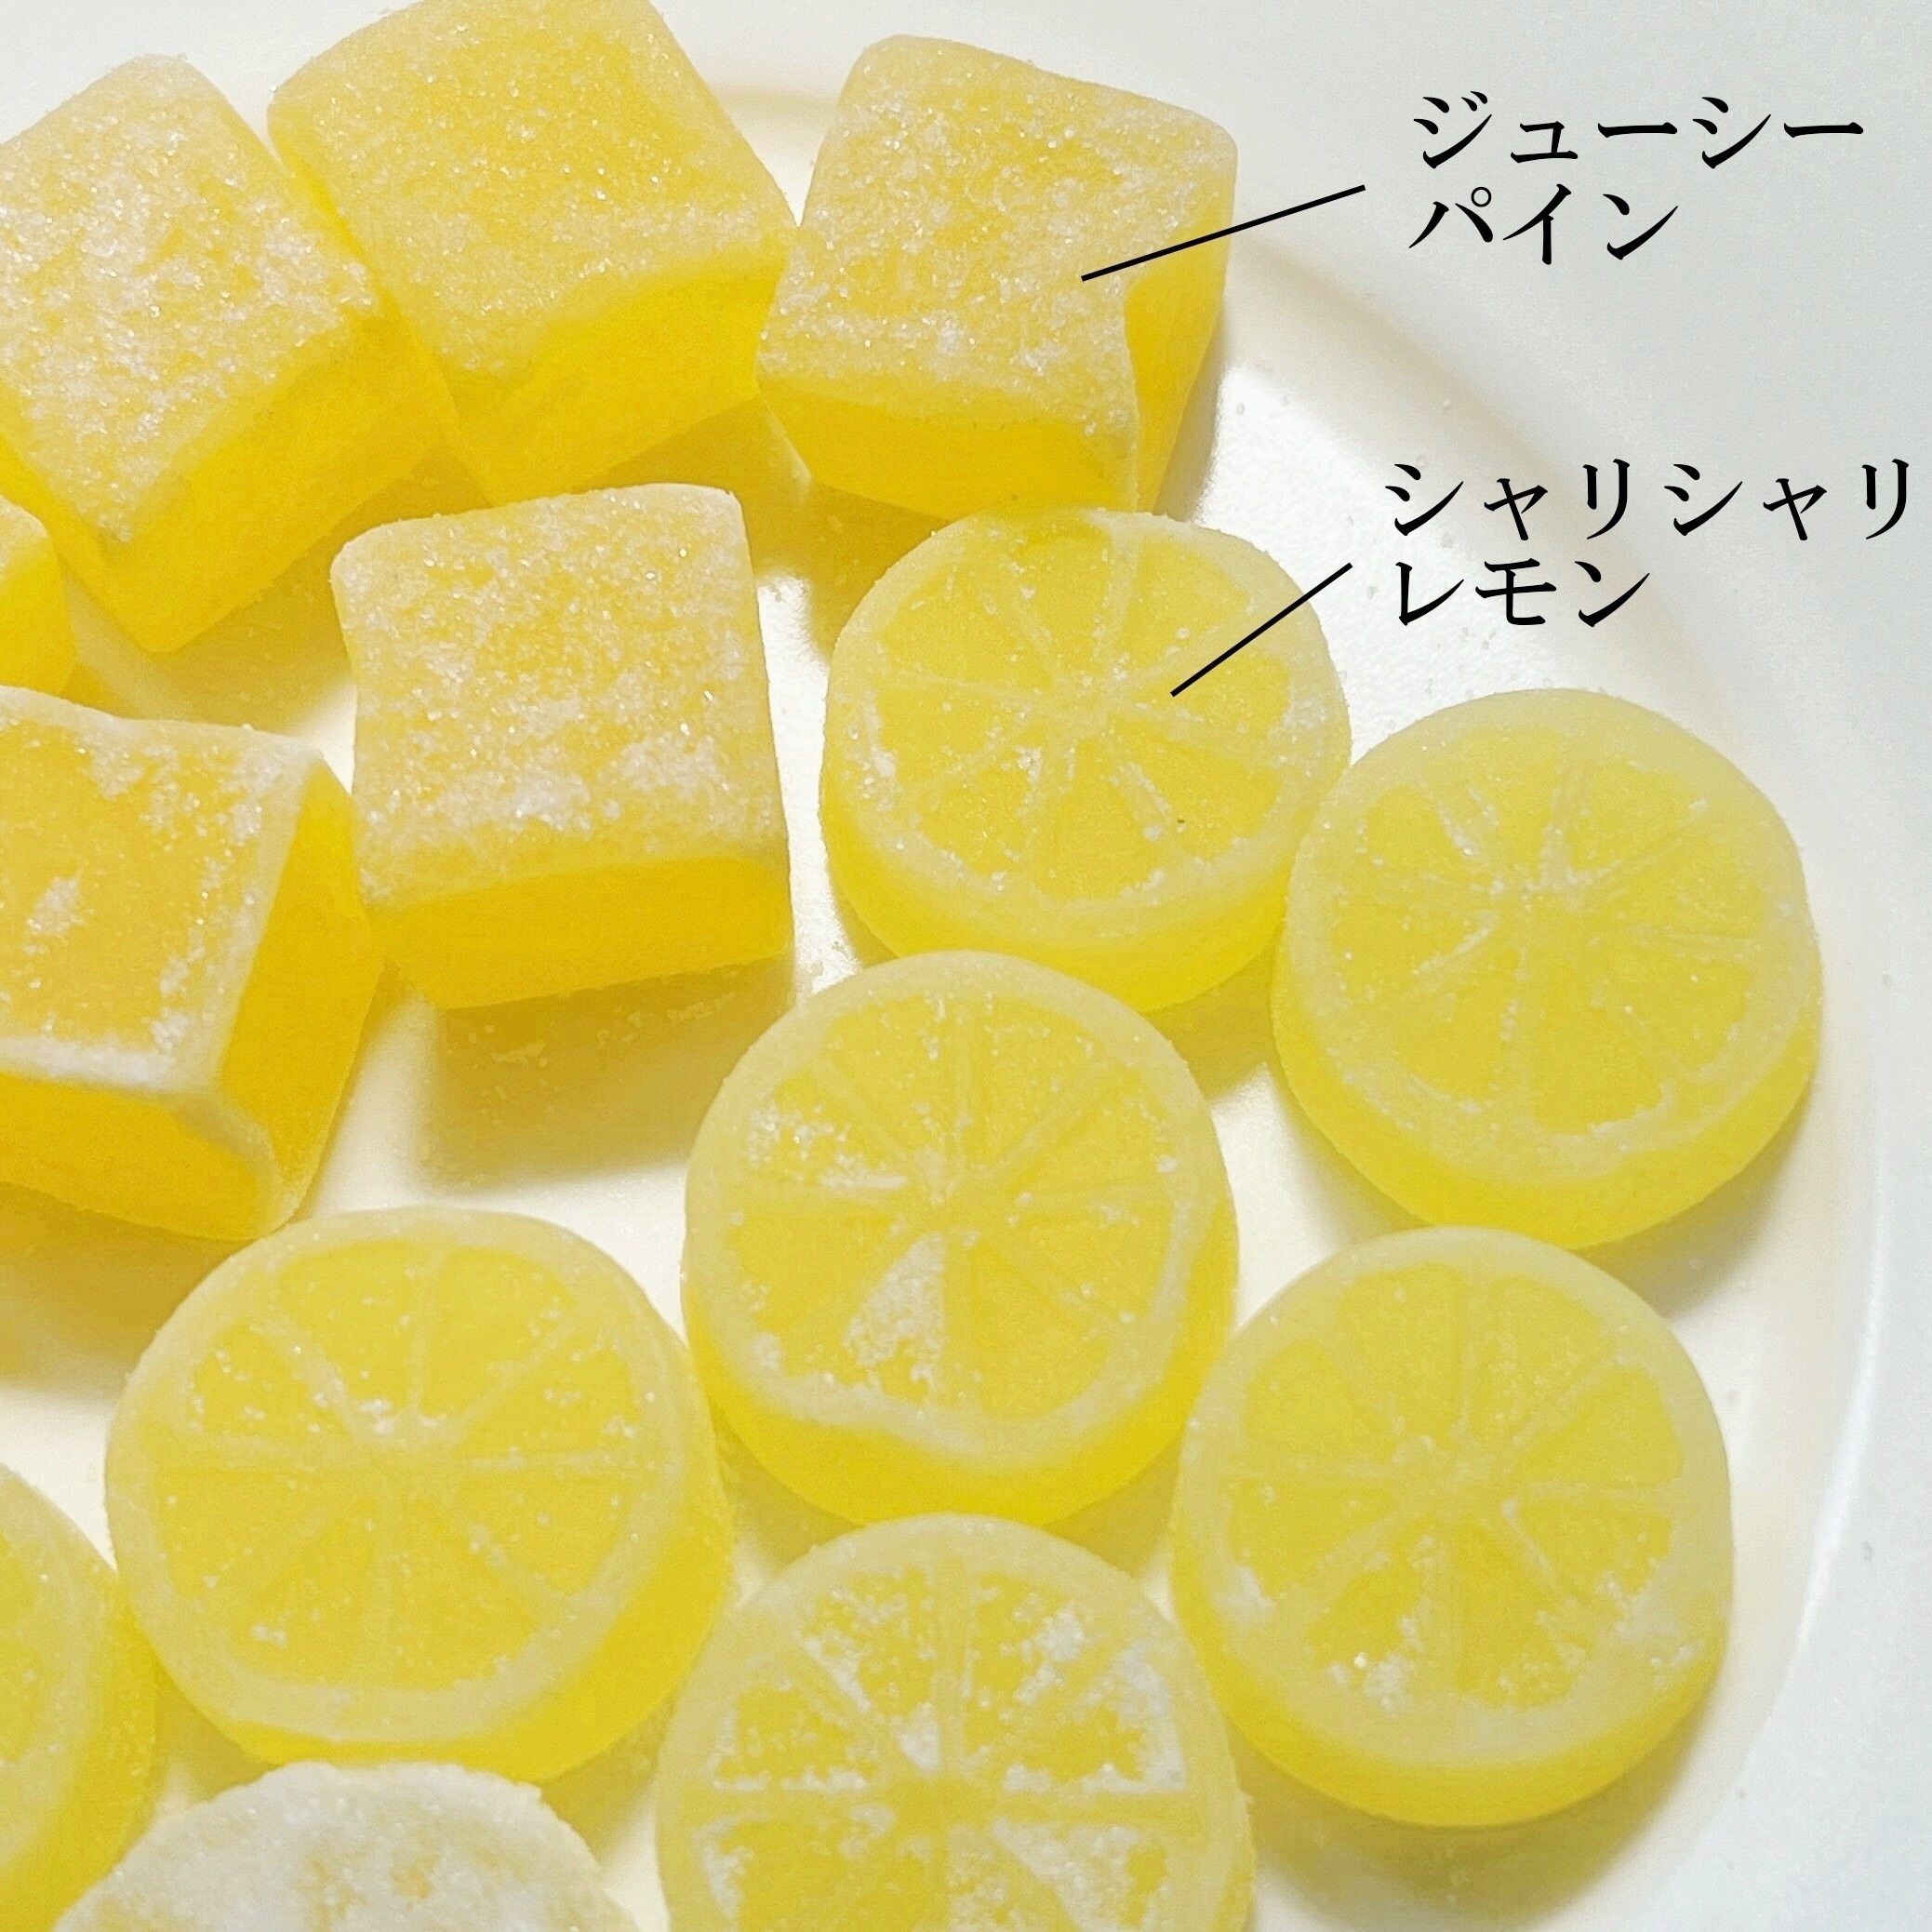 サクレグミ レモン味 メロン味 ファミマ限定 - 菓子